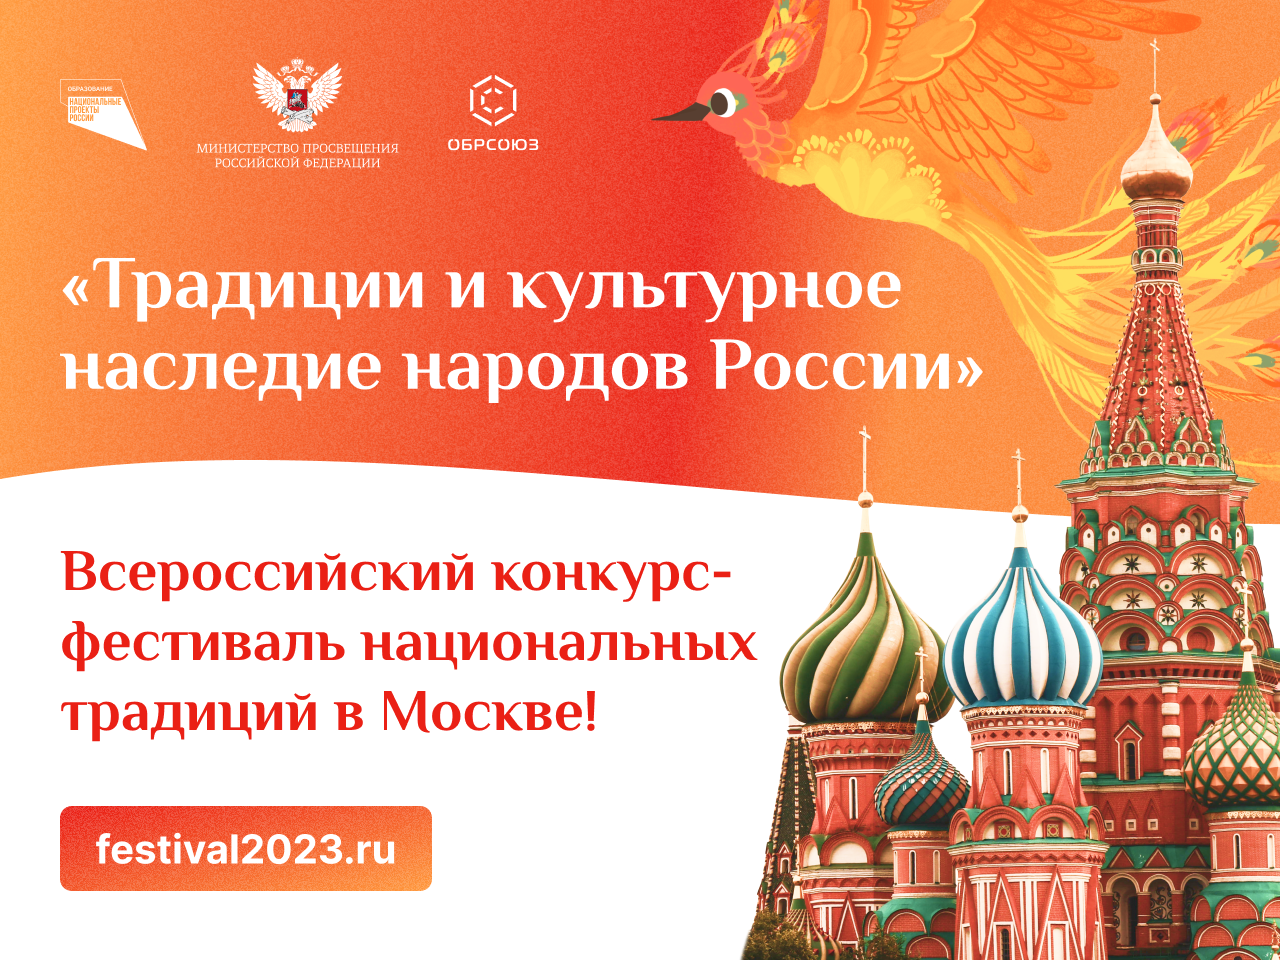 На фестиваль национальных традиций 11-12 ноября в Москву приедут более 400 детей и подростков со всей России